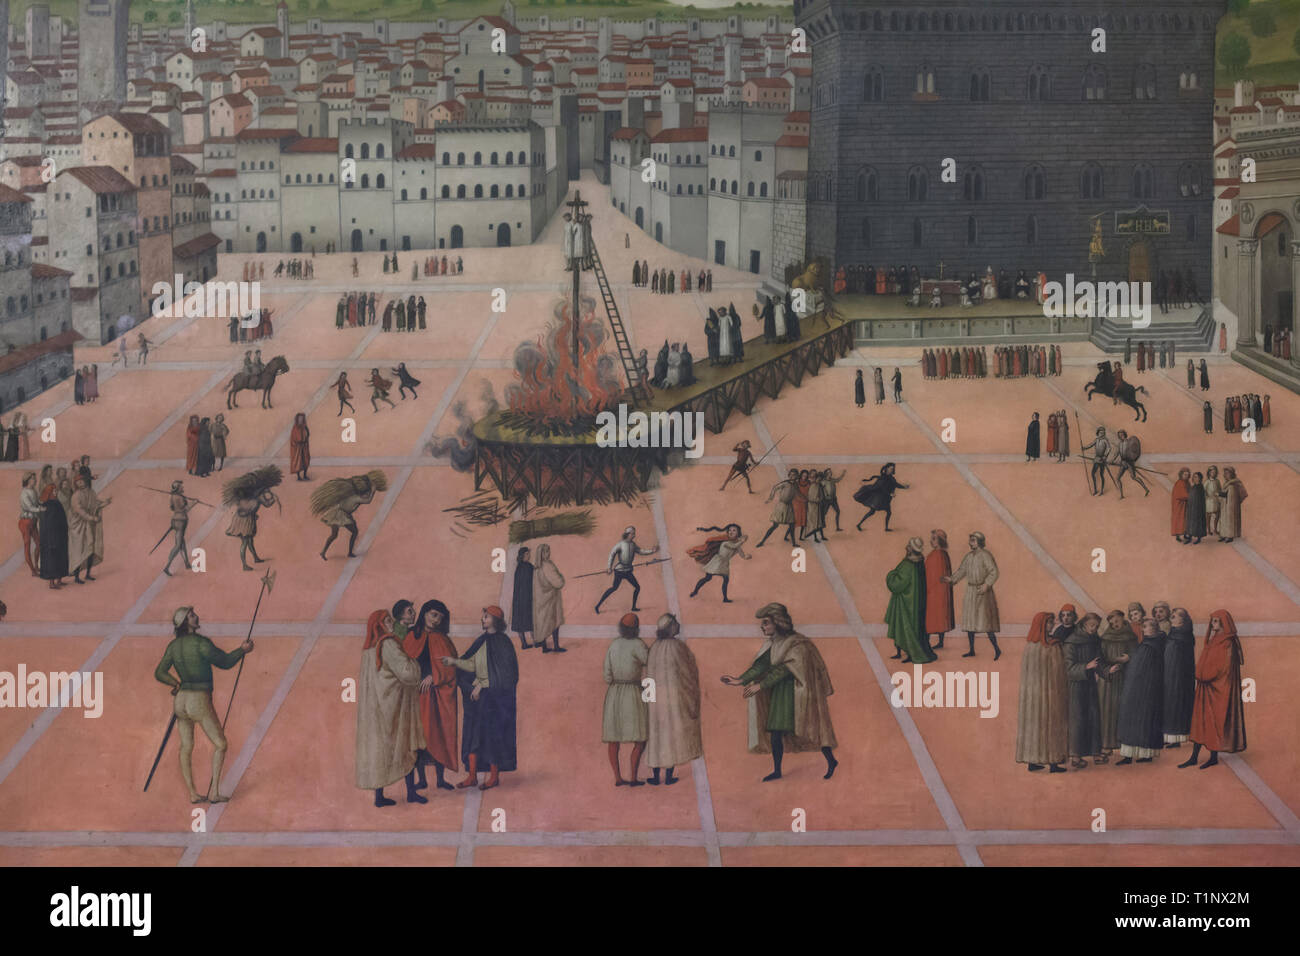 Pintura 'Martyrdom de Girolamo Savonarola en Piazza della Signoria el 23 de mayo de 1498' por un desconocido pintor data de finales del siglo XV, en la pantalla de la celda de Savonarola en el convento de San Marcos (Convento di San Marco), ahora el Museo de San Marco (Museo Nazionale di San Marco) en Florencia, Toscana, Italia. Foto de stock